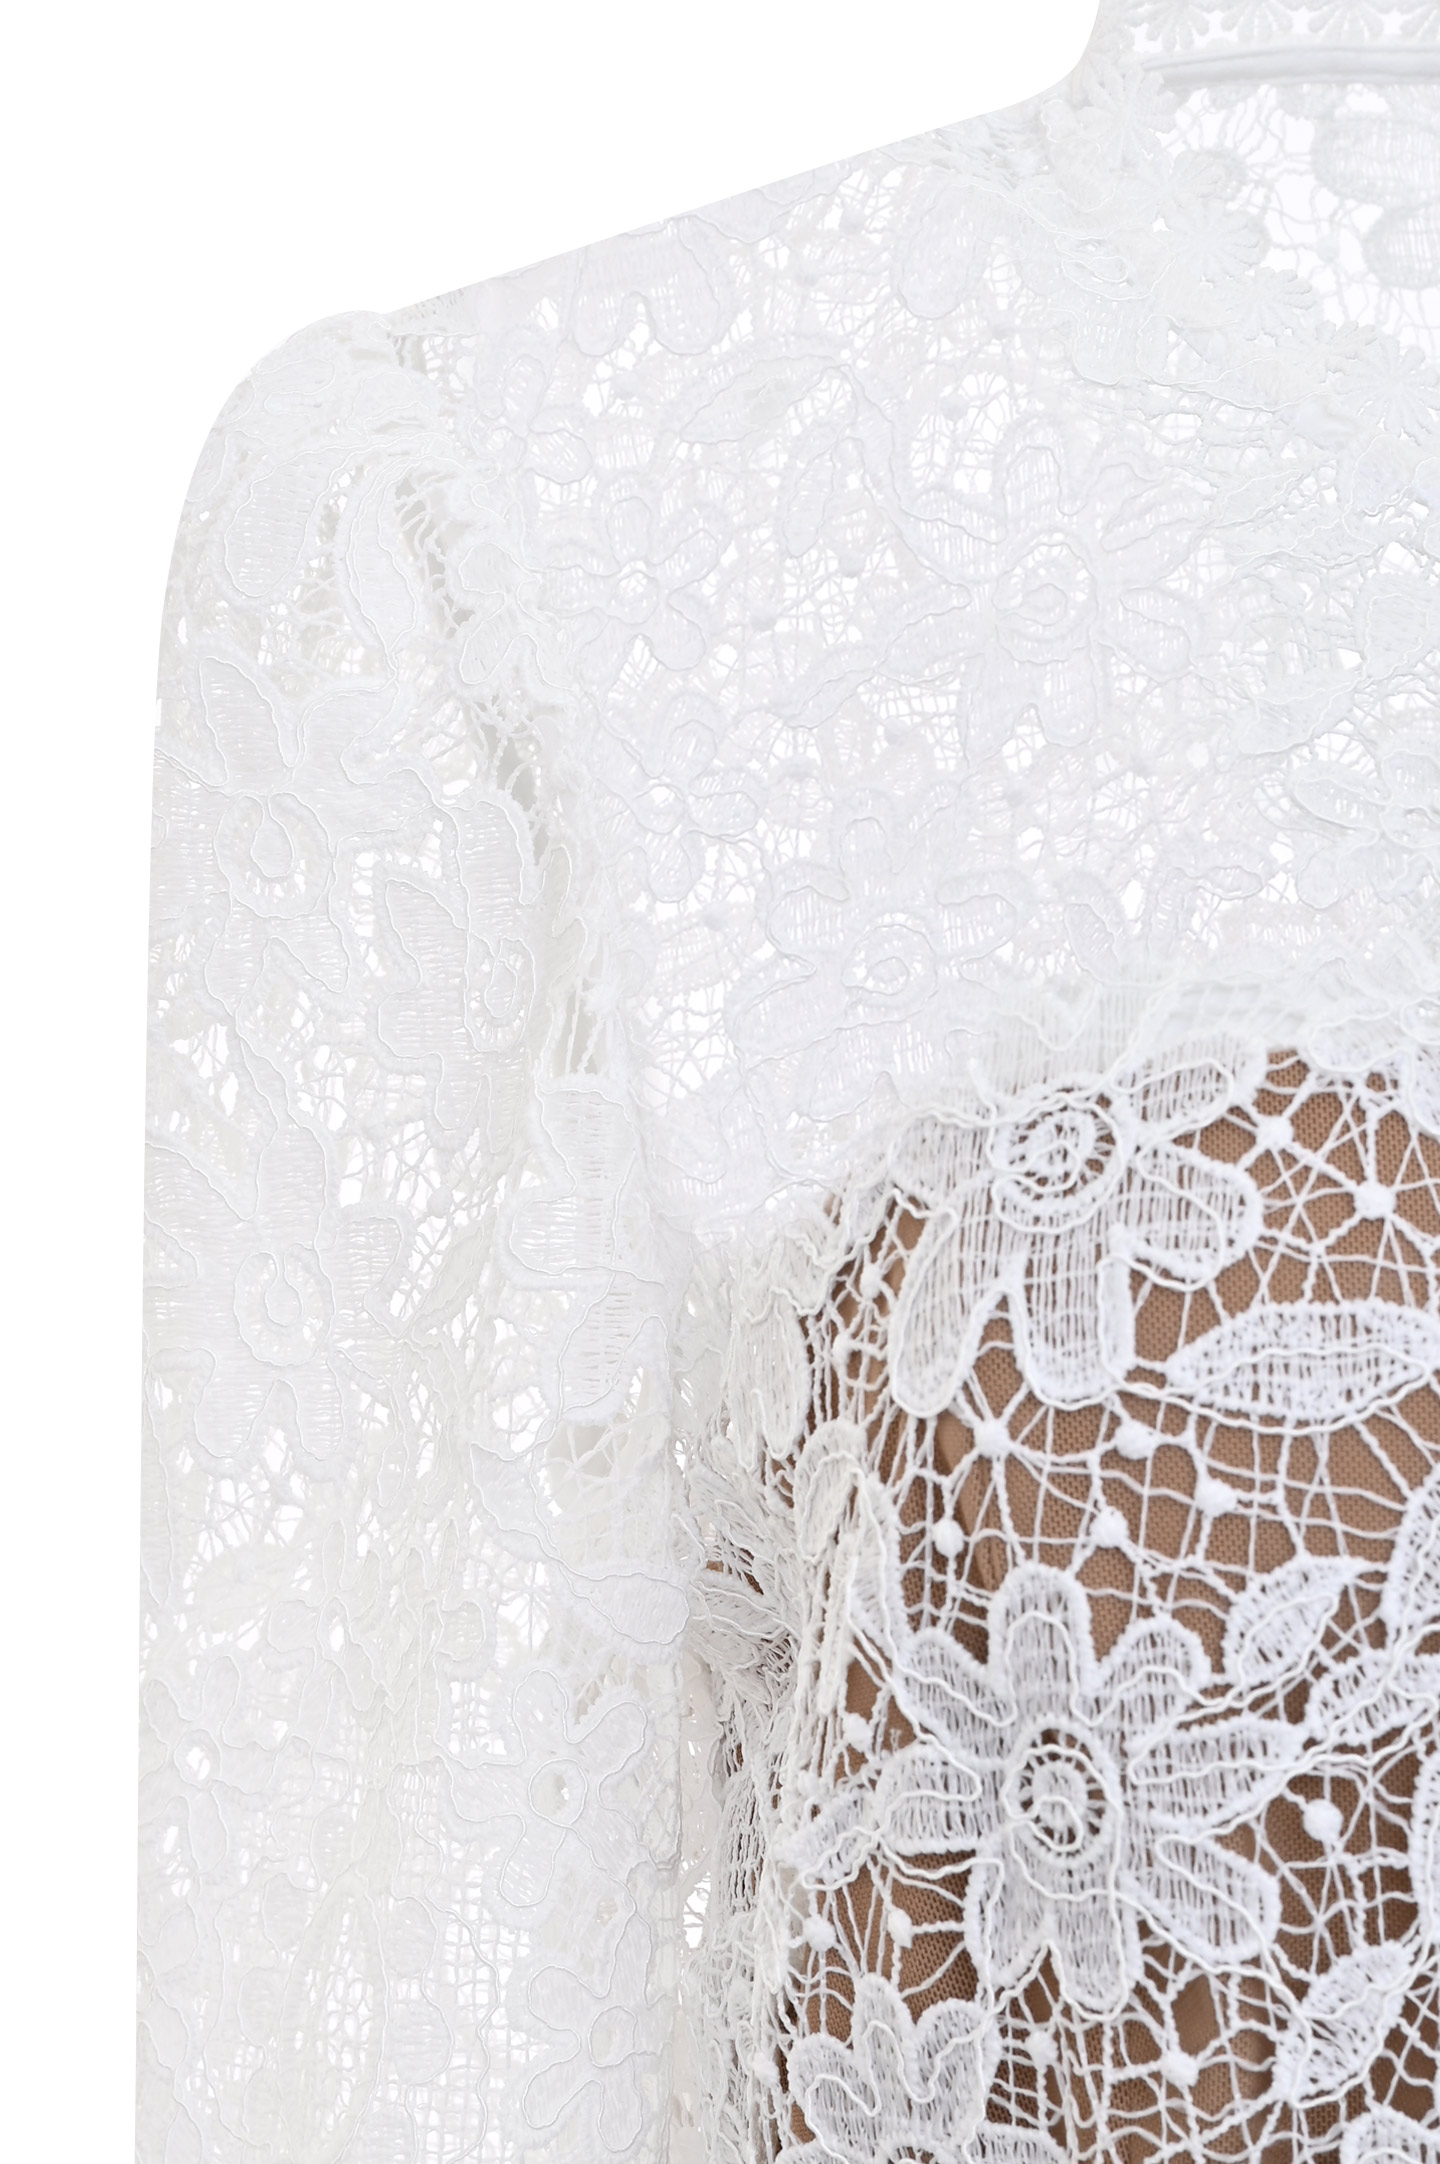 Платье SELF PORTRAIT SS21-093M, цвет: Белый, Женский